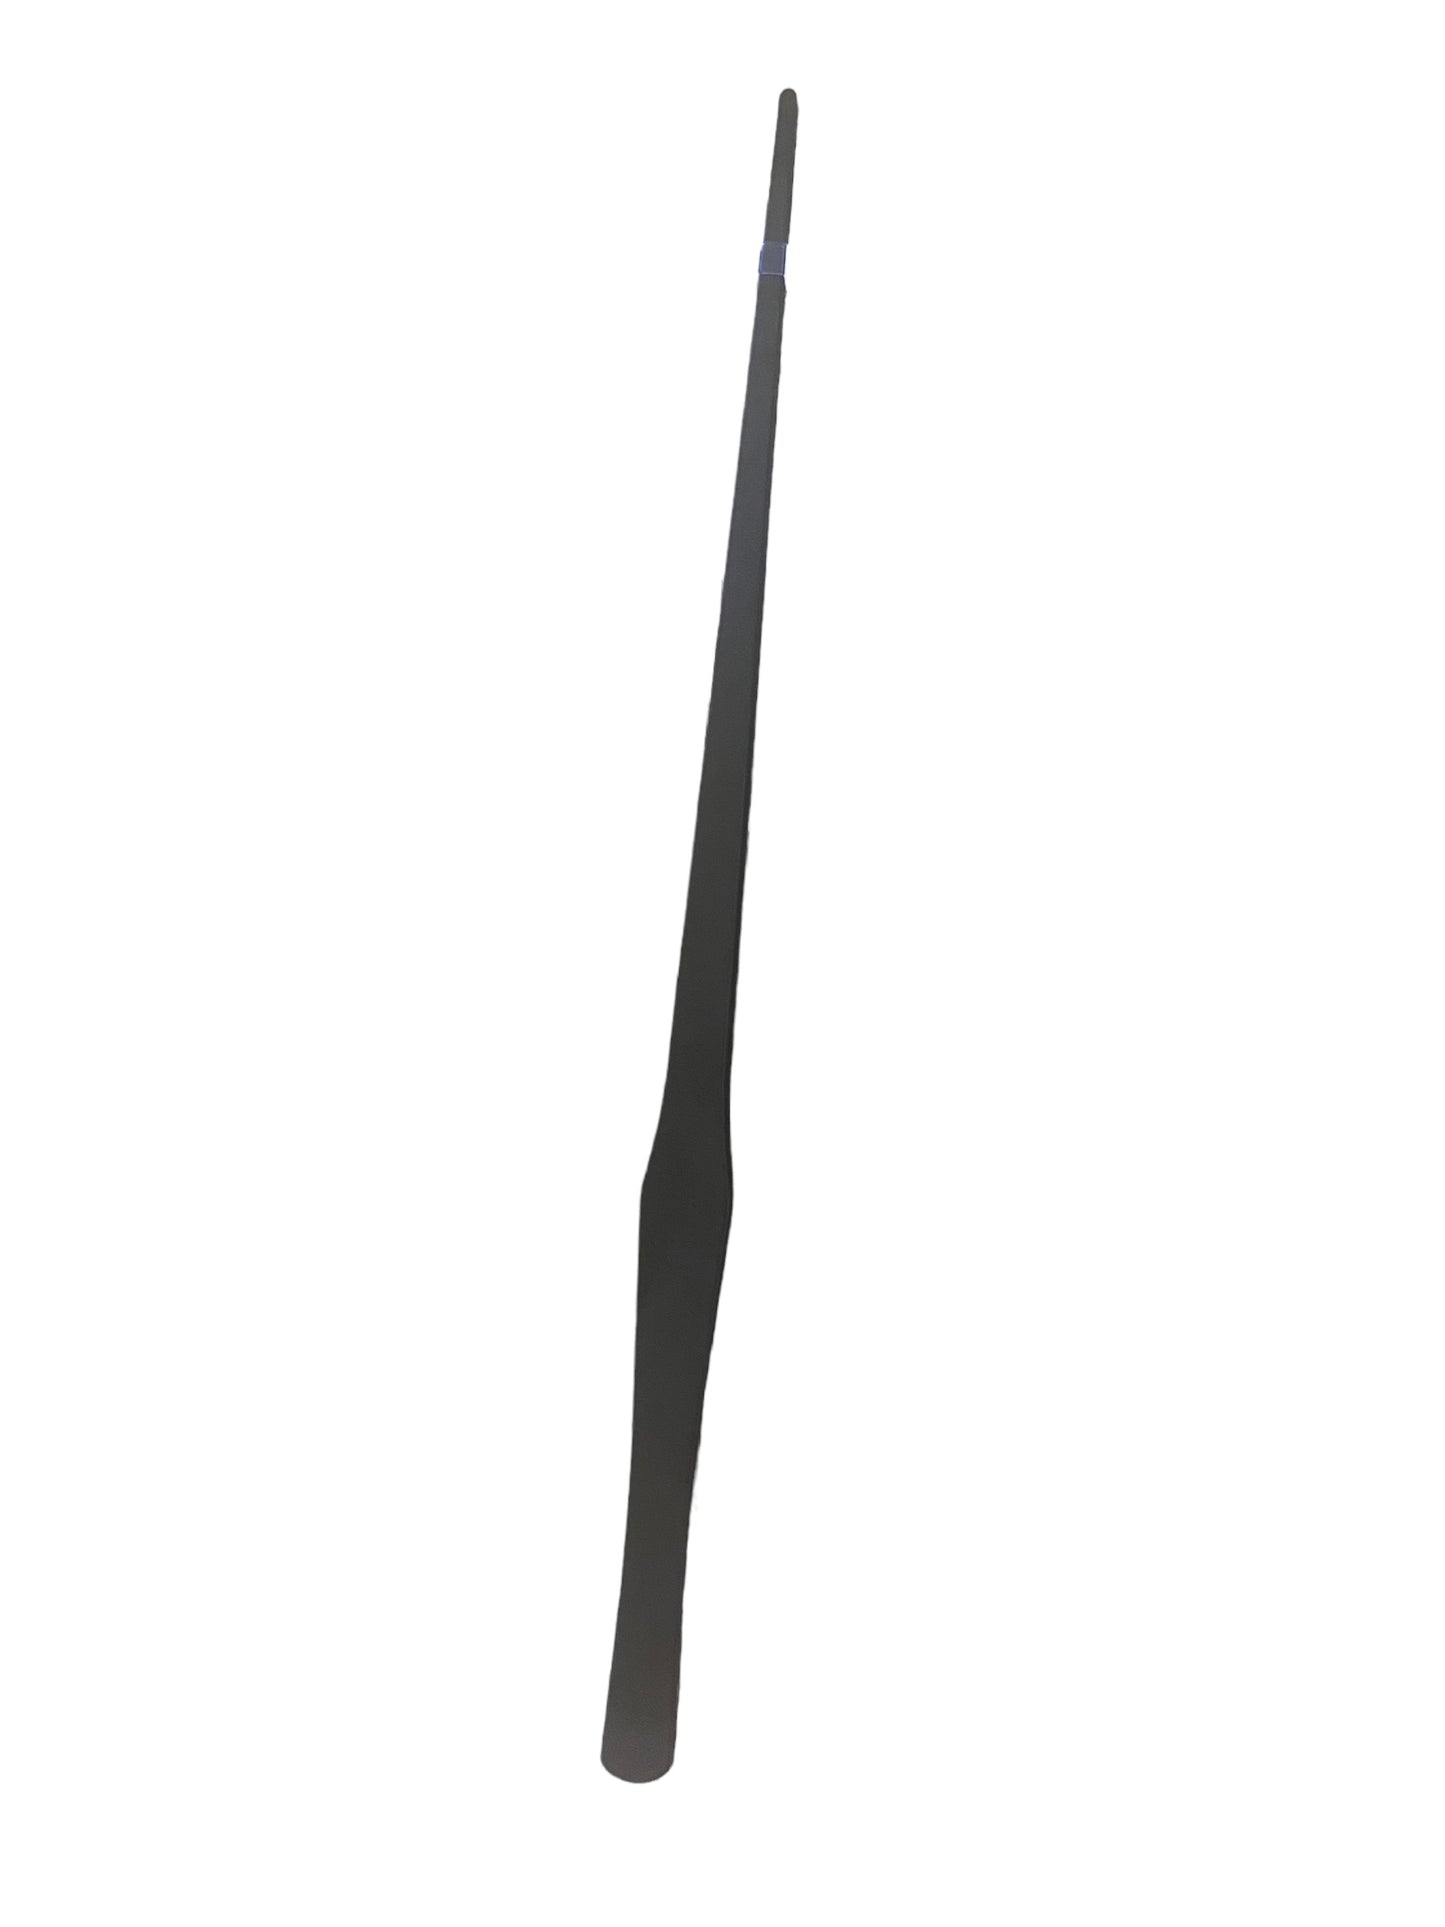 Terrarium tweezer combo - 38cm bended & straight